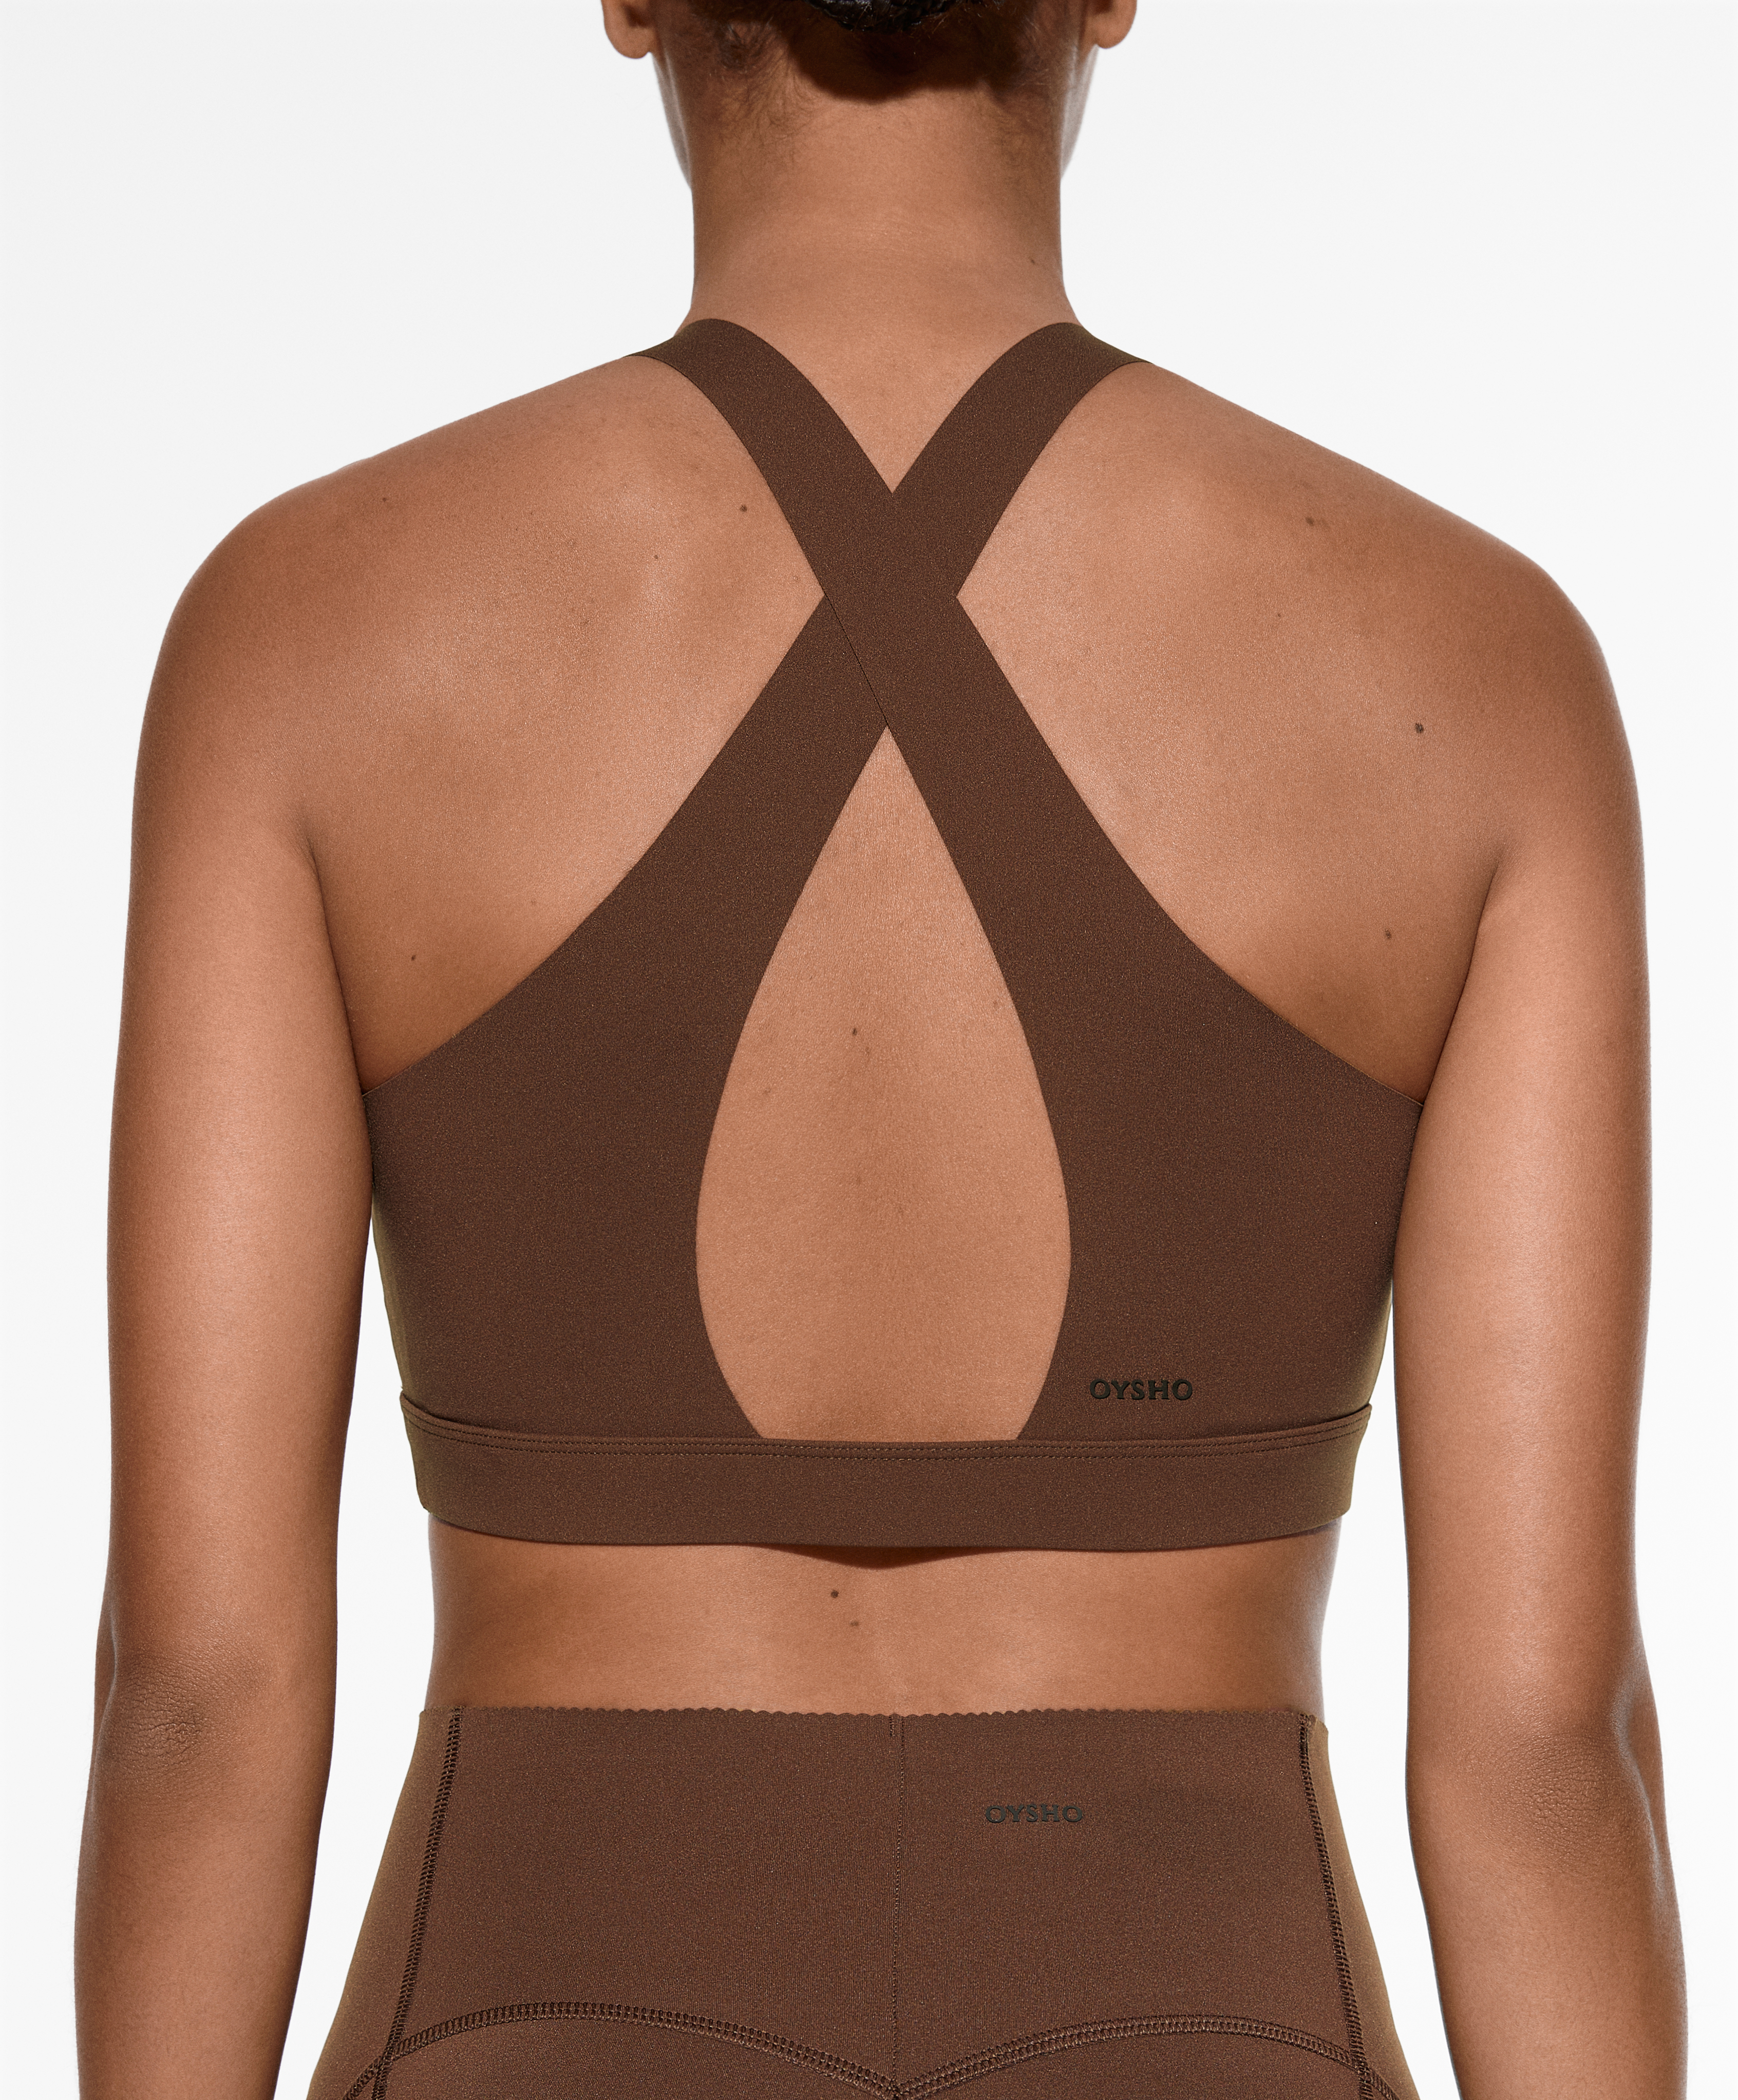 Oysho - Strappy back sports bra